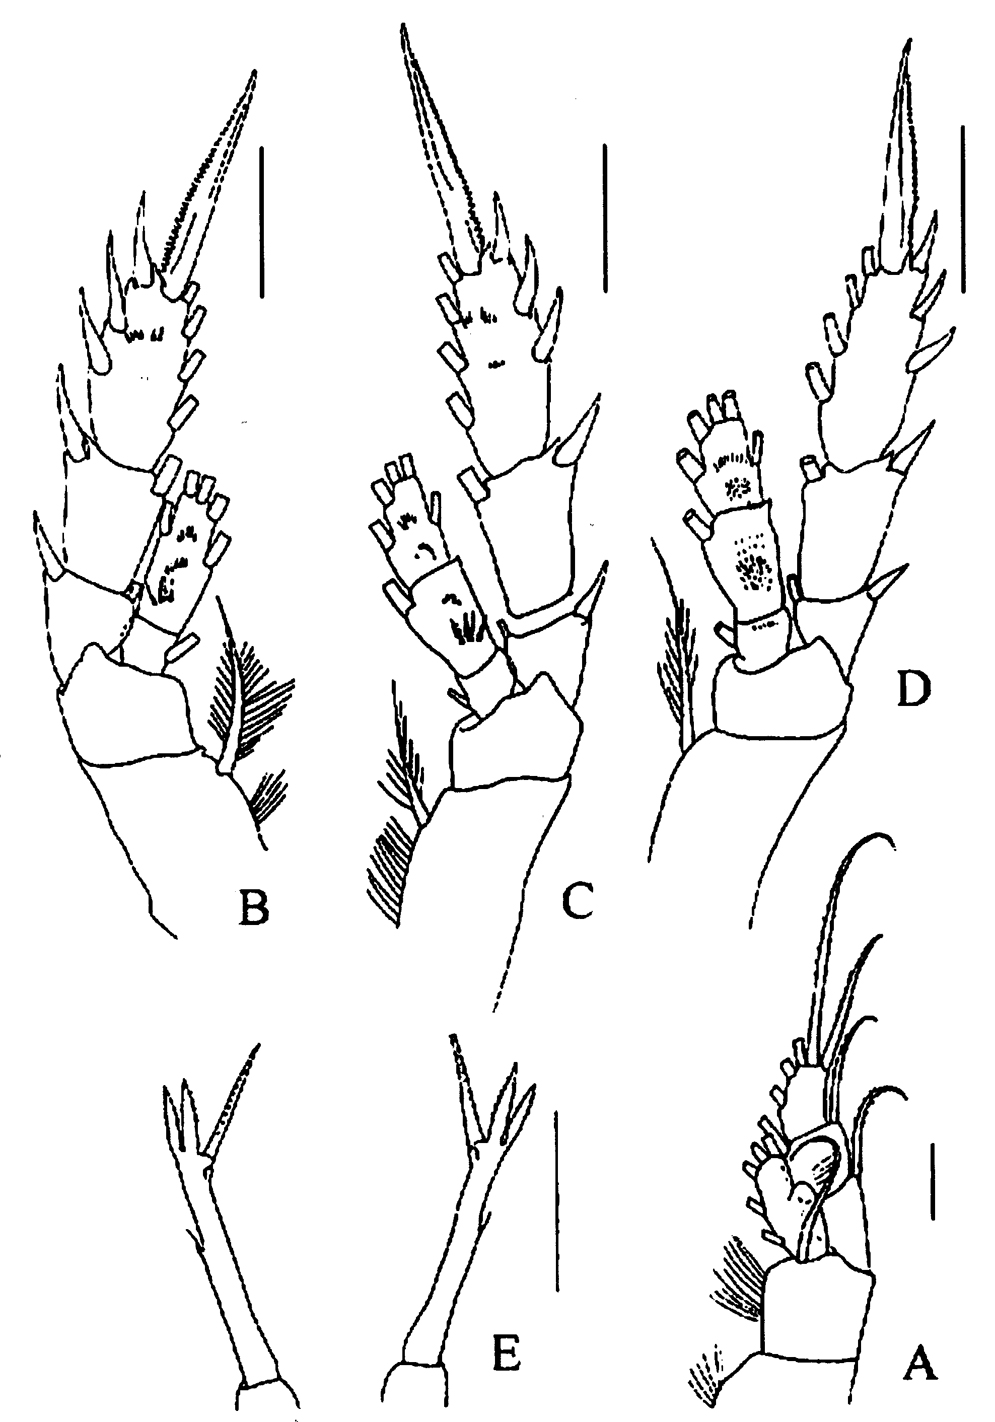 Espce Tharybis juhlae - Planche 4 de figures morphologiques